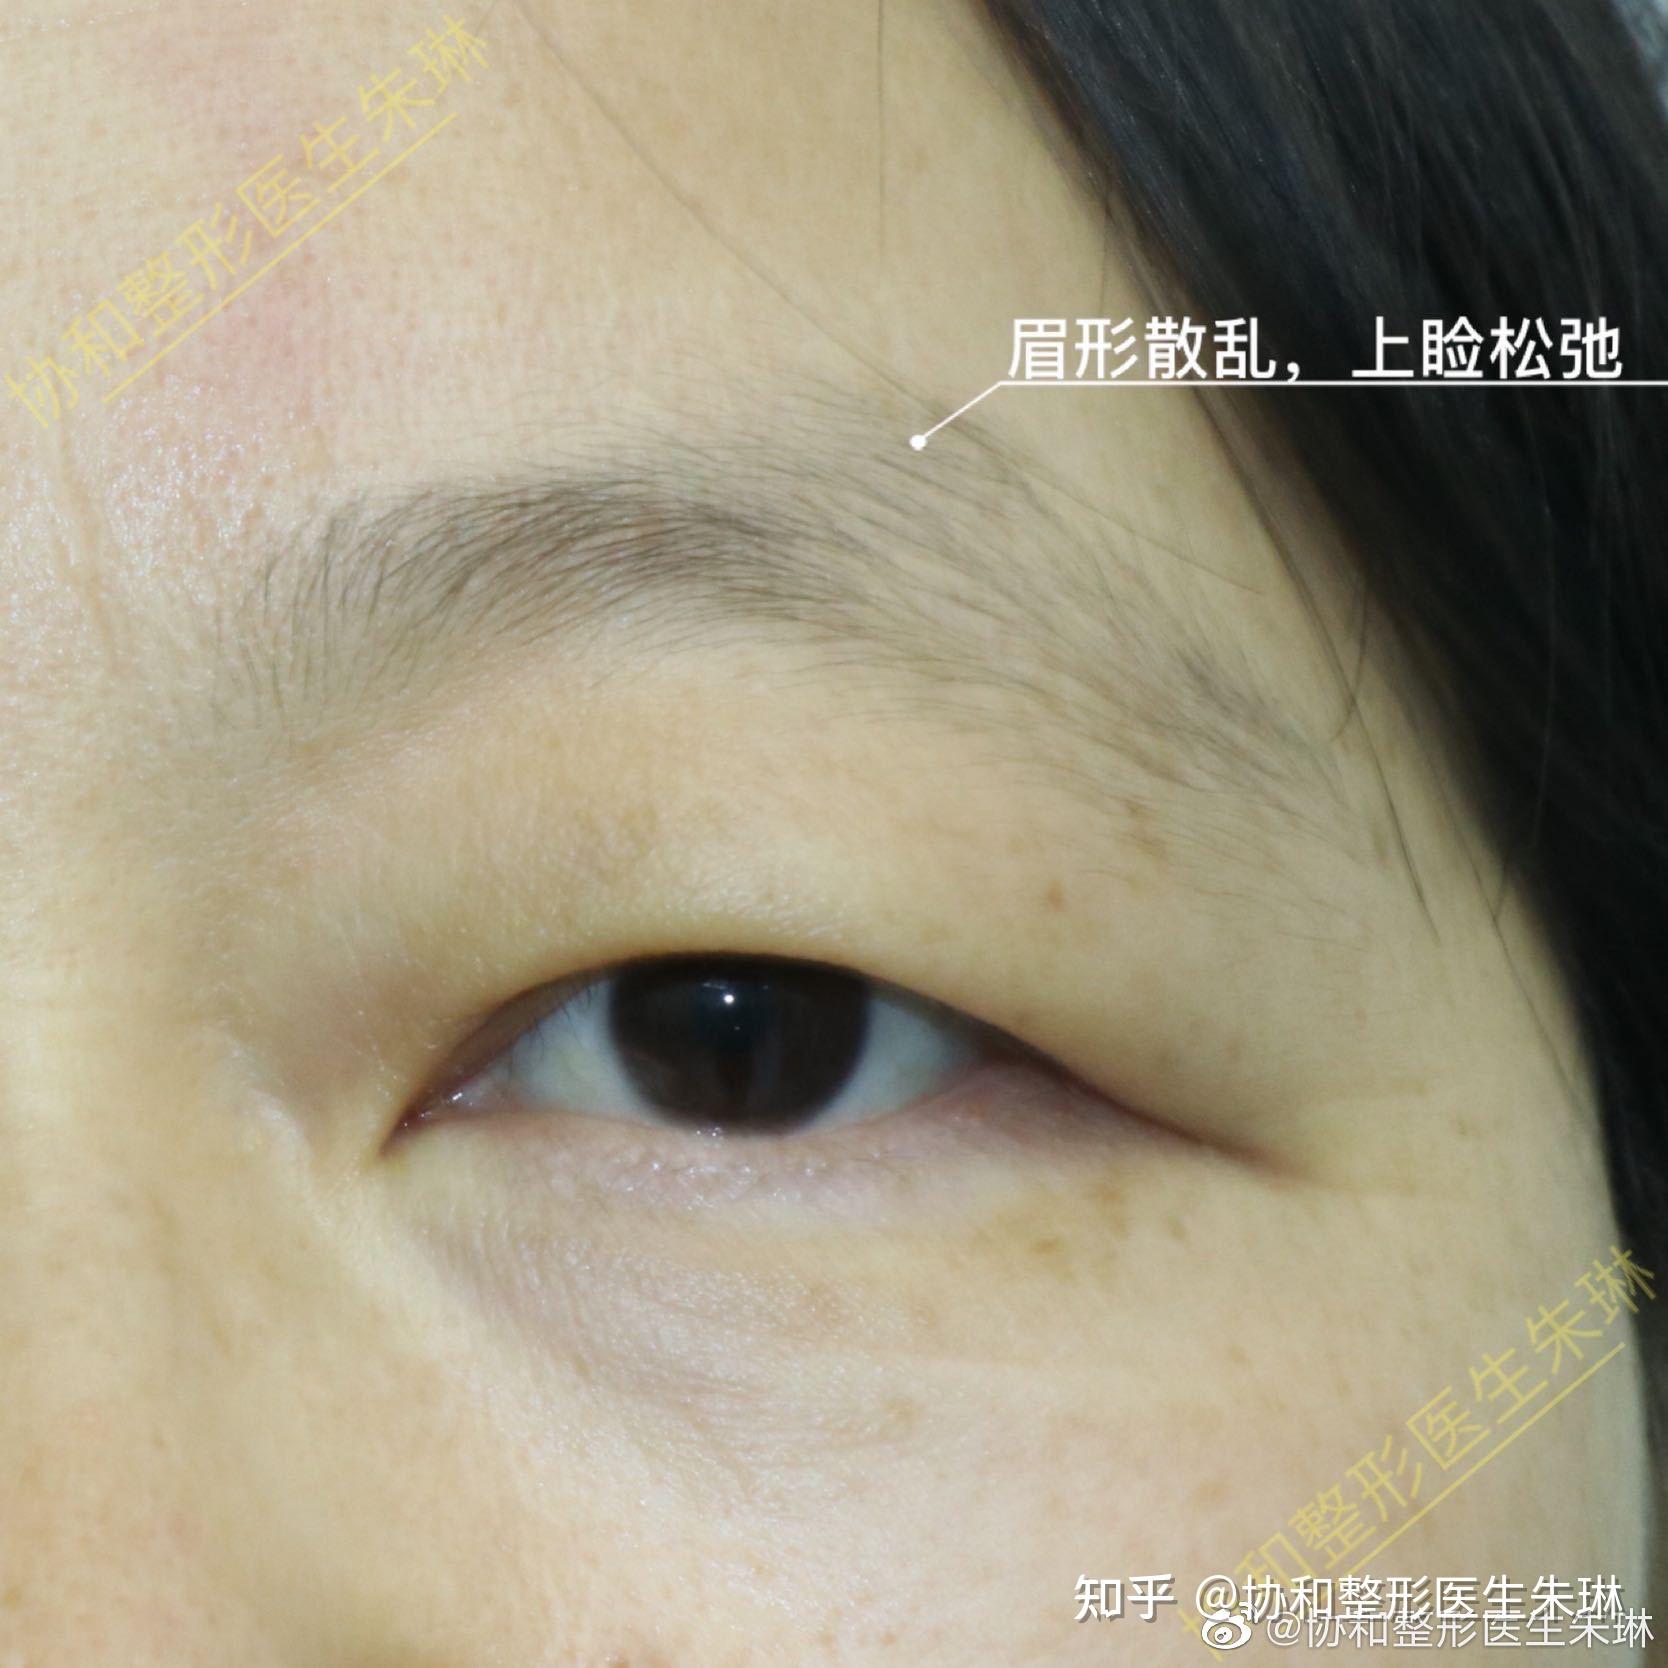 切眉后的疤痕如何通过纹眉改善 - 知乎